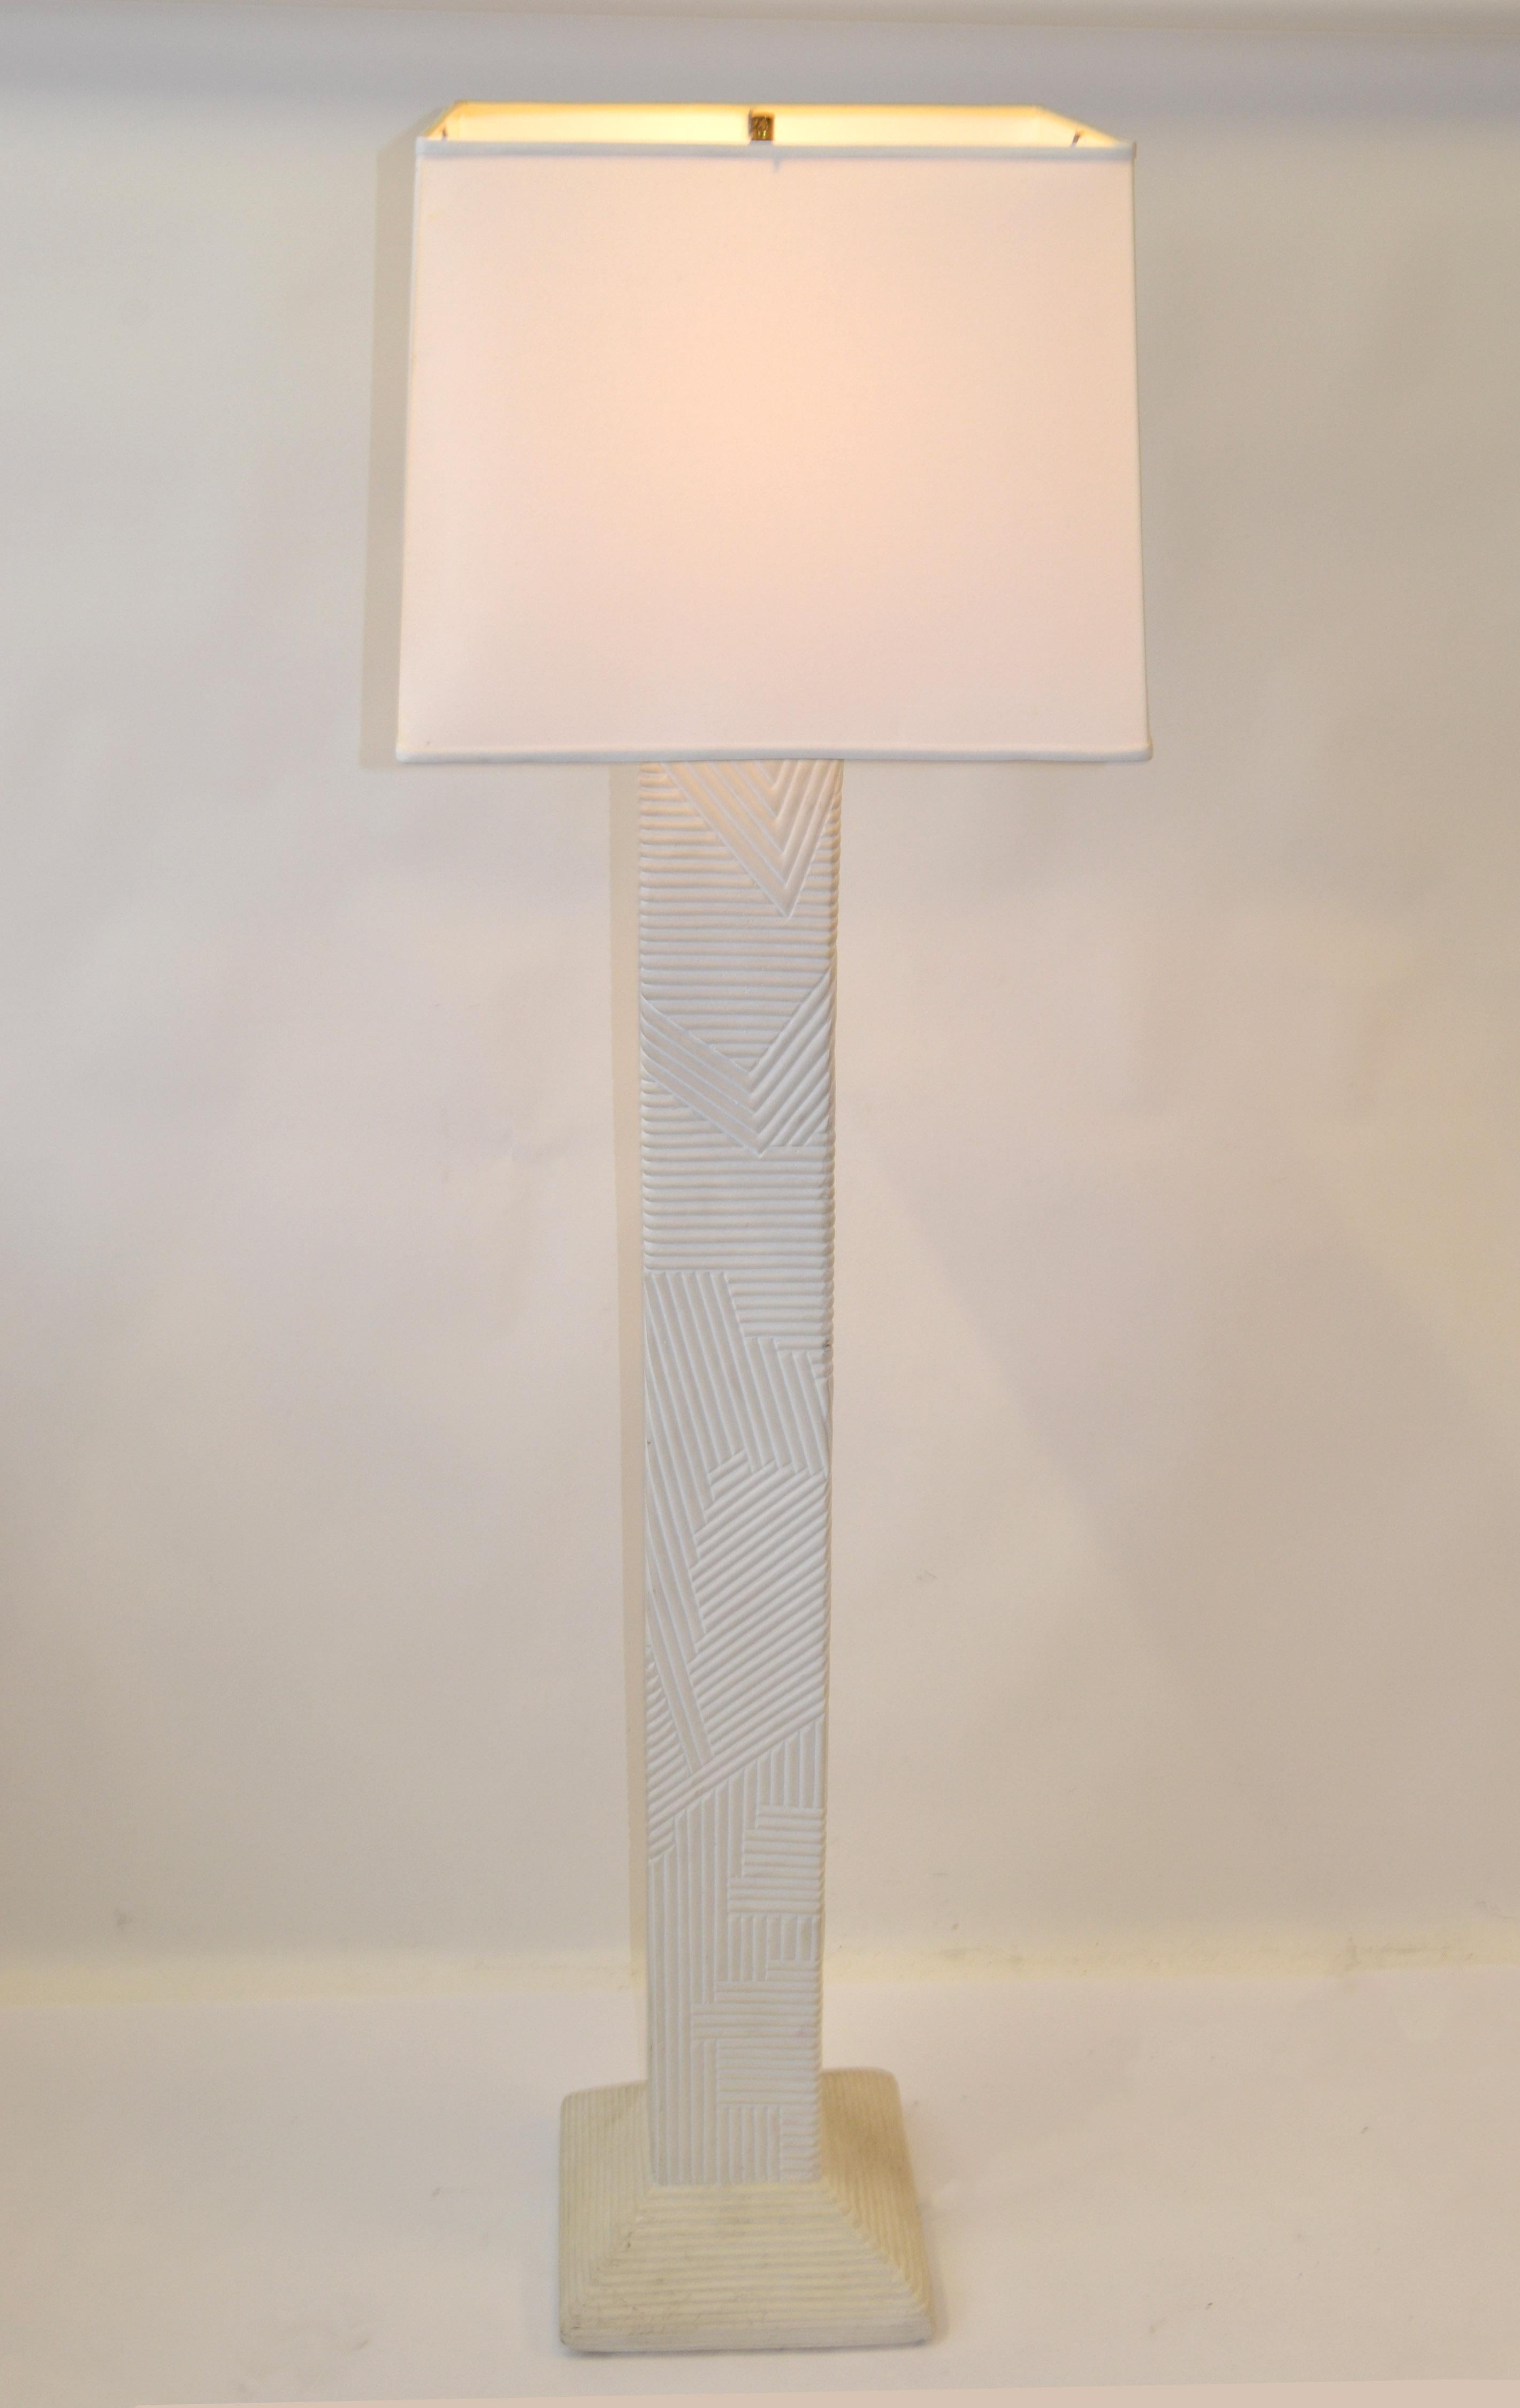 Lampadaire haut attribué à Sirmos, de style moderne du milieu du siècle, avec un noyau géométrique en plâtre rectangulaire texturé et un col en laiton.
La lampe est soutenue par une base carrée, de la même finition que la lampe.
Sirmos était un